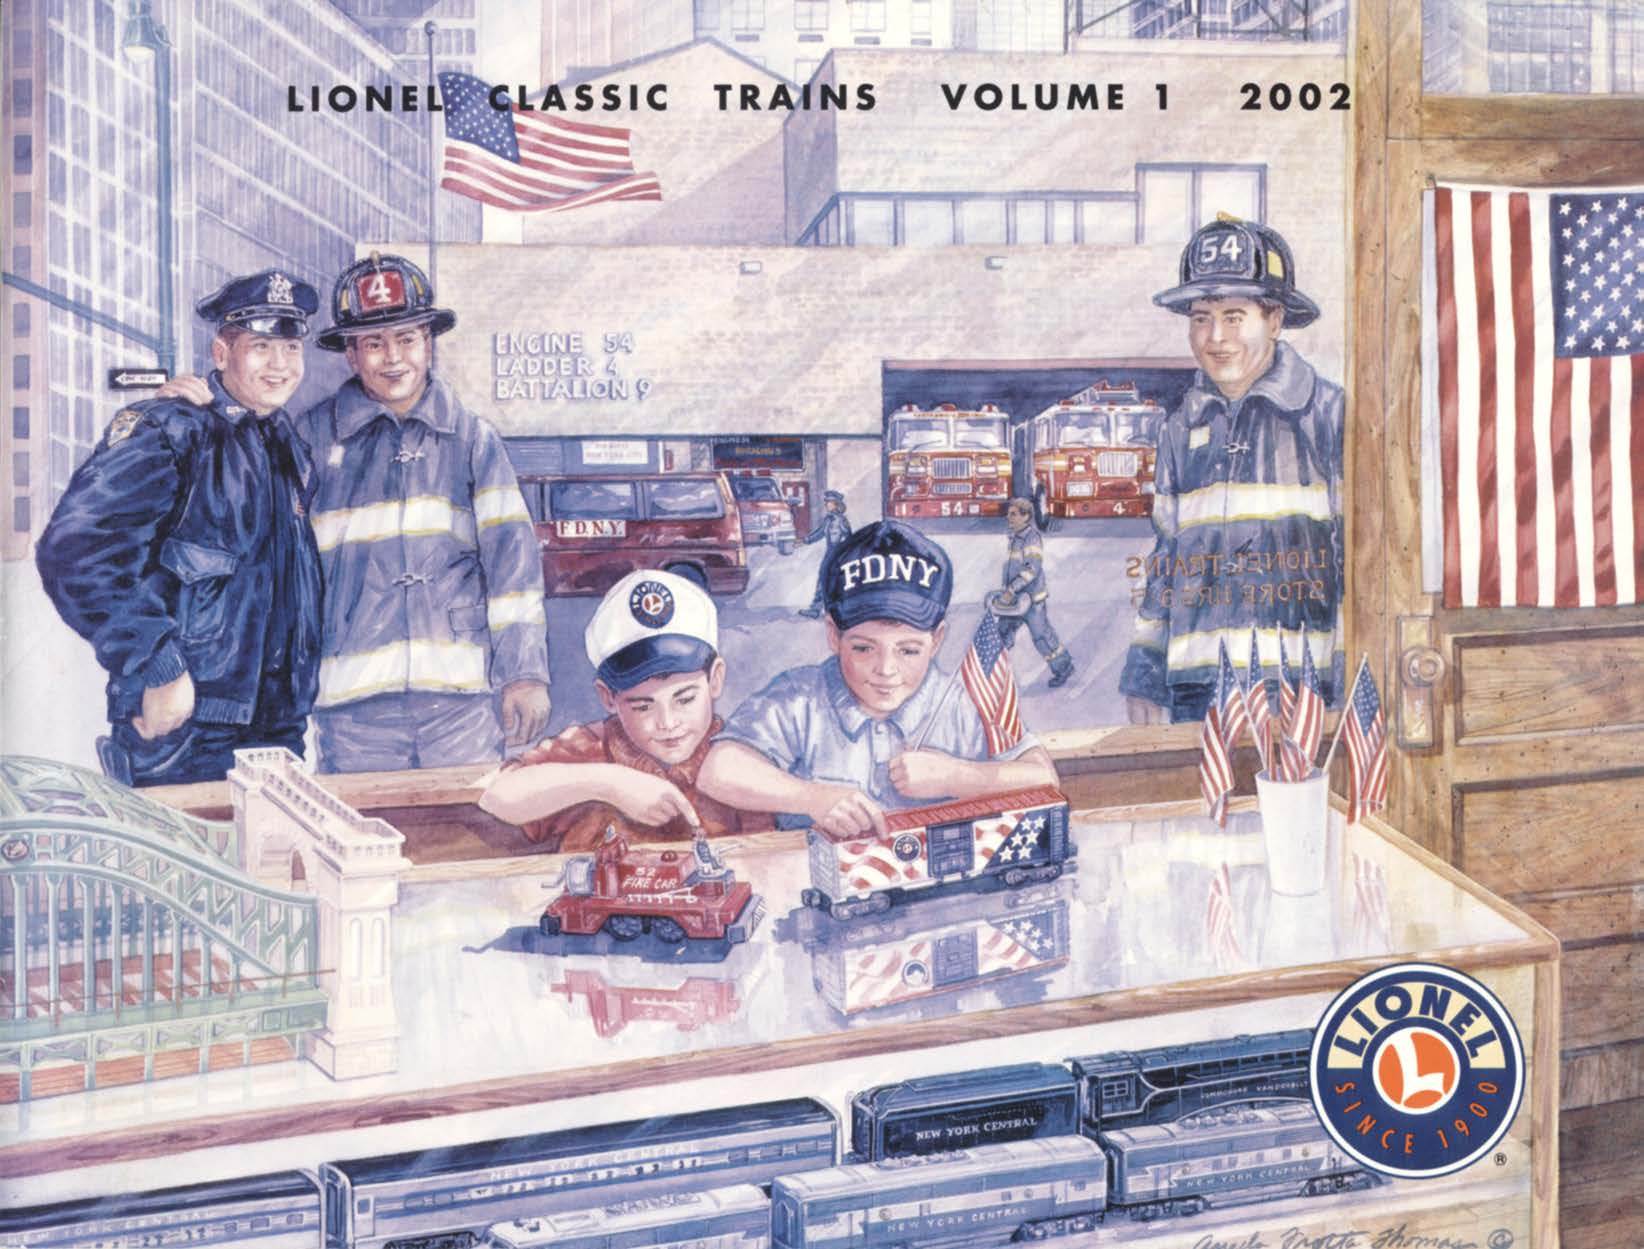 2002 Lionel Volume 1